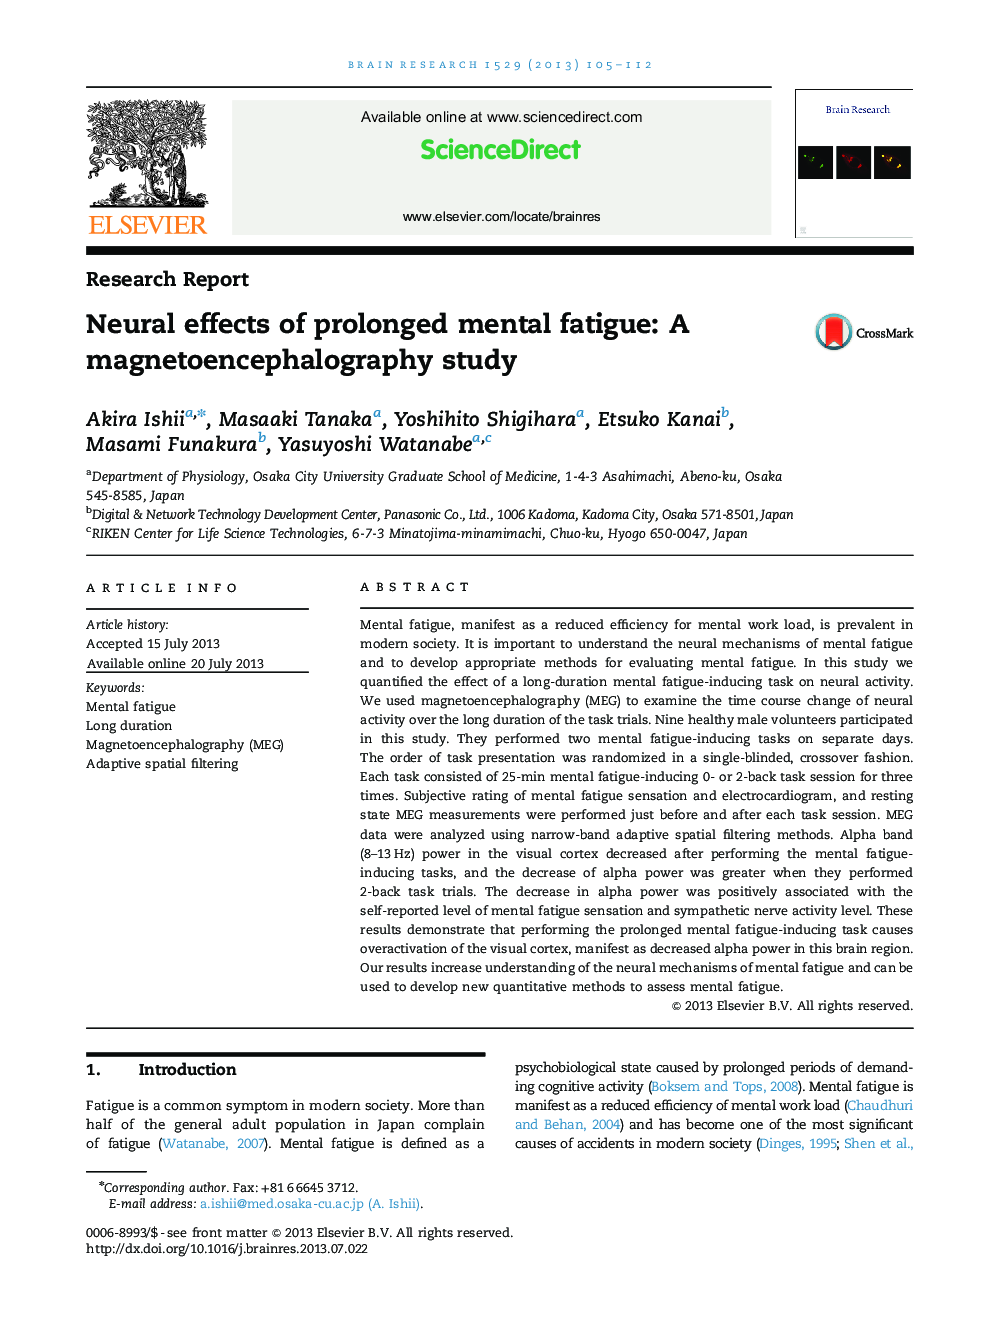 تحقیقات گزارشی اثر ناشی از خستگی ذهنی طولانی: مطالعه مغناطسفالوگرافی 